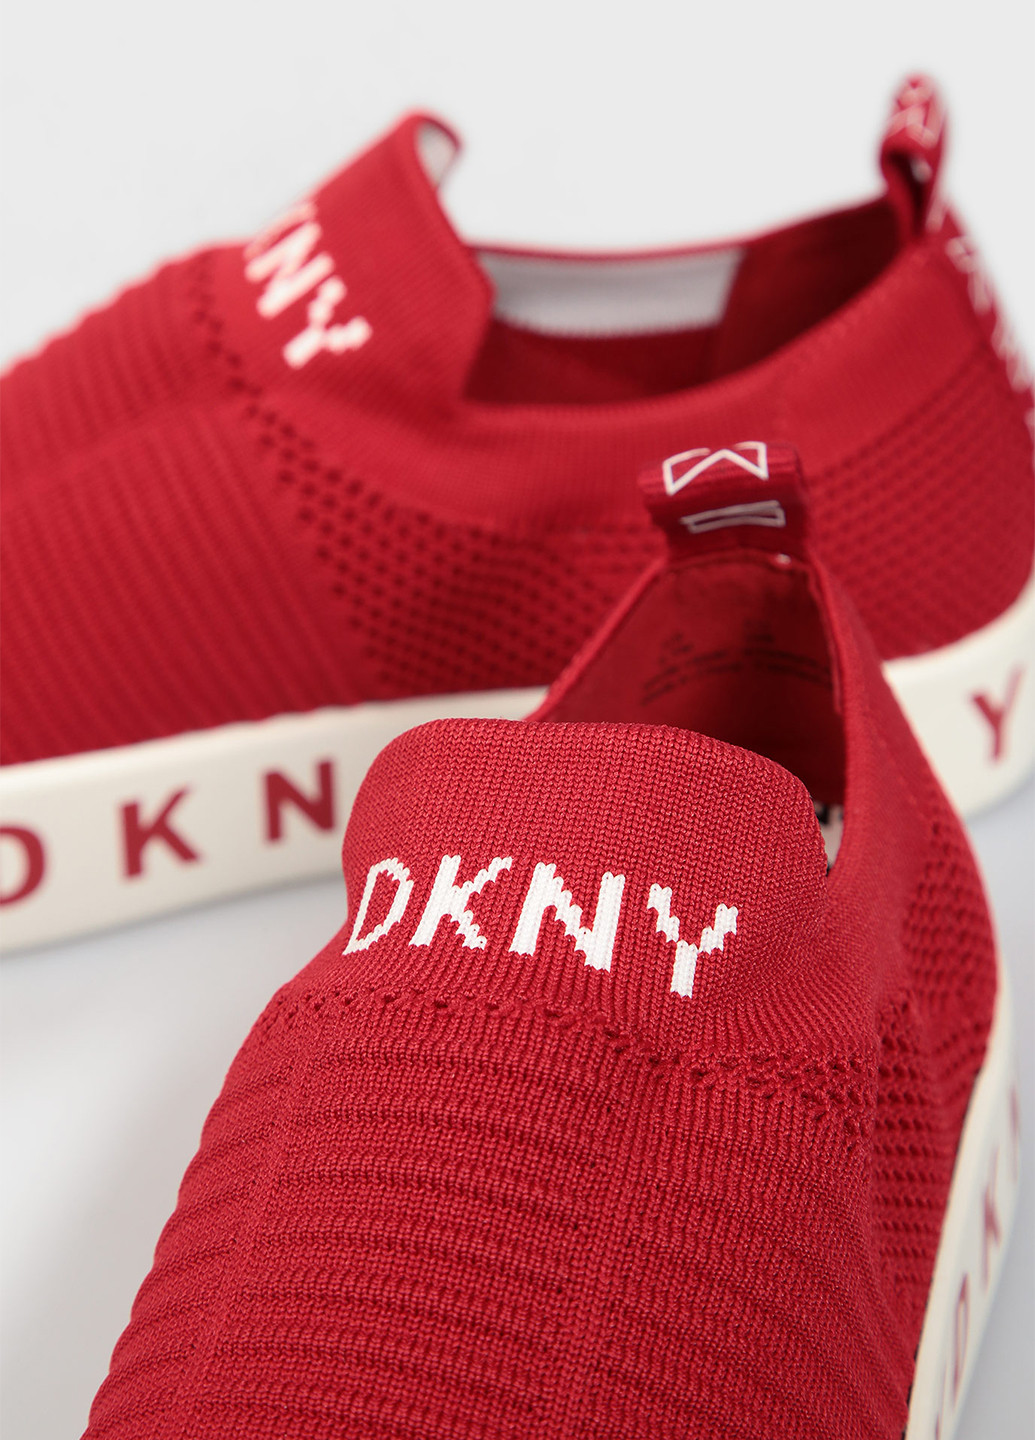 Красные слипоны DKNY с надписью